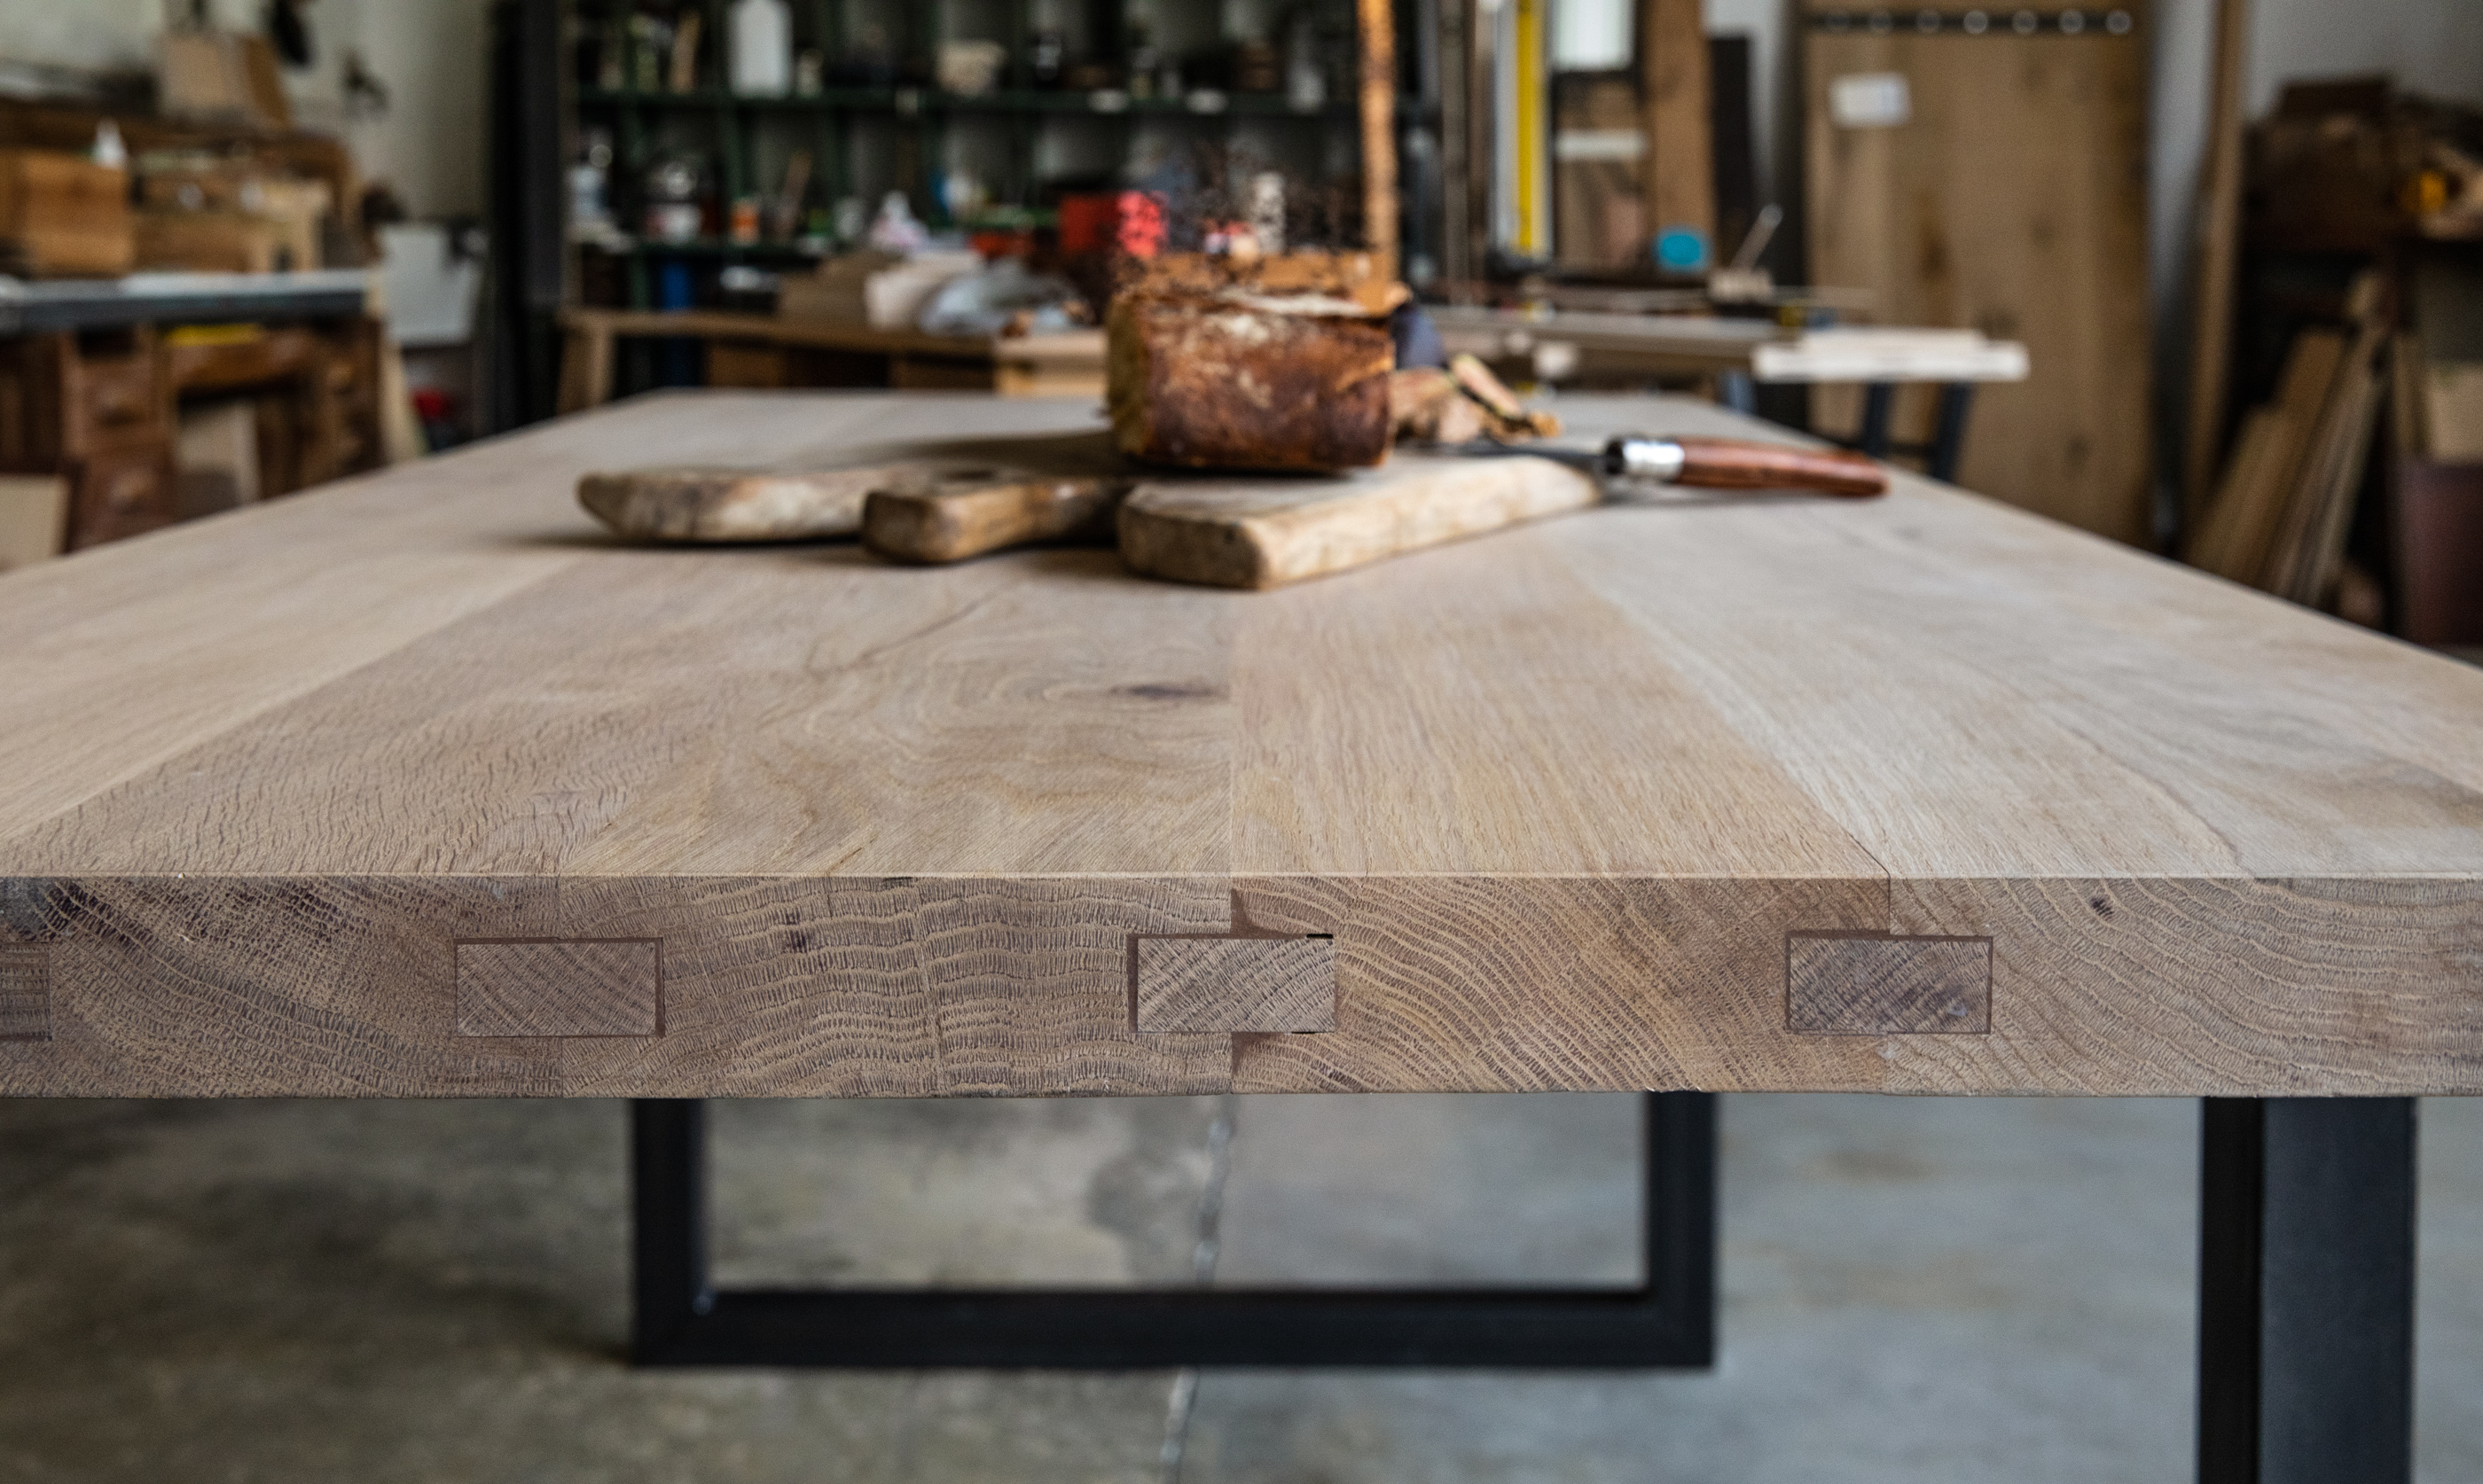 Planche de chêne massif 2,5 cm d'épaisseur – Brut de Table